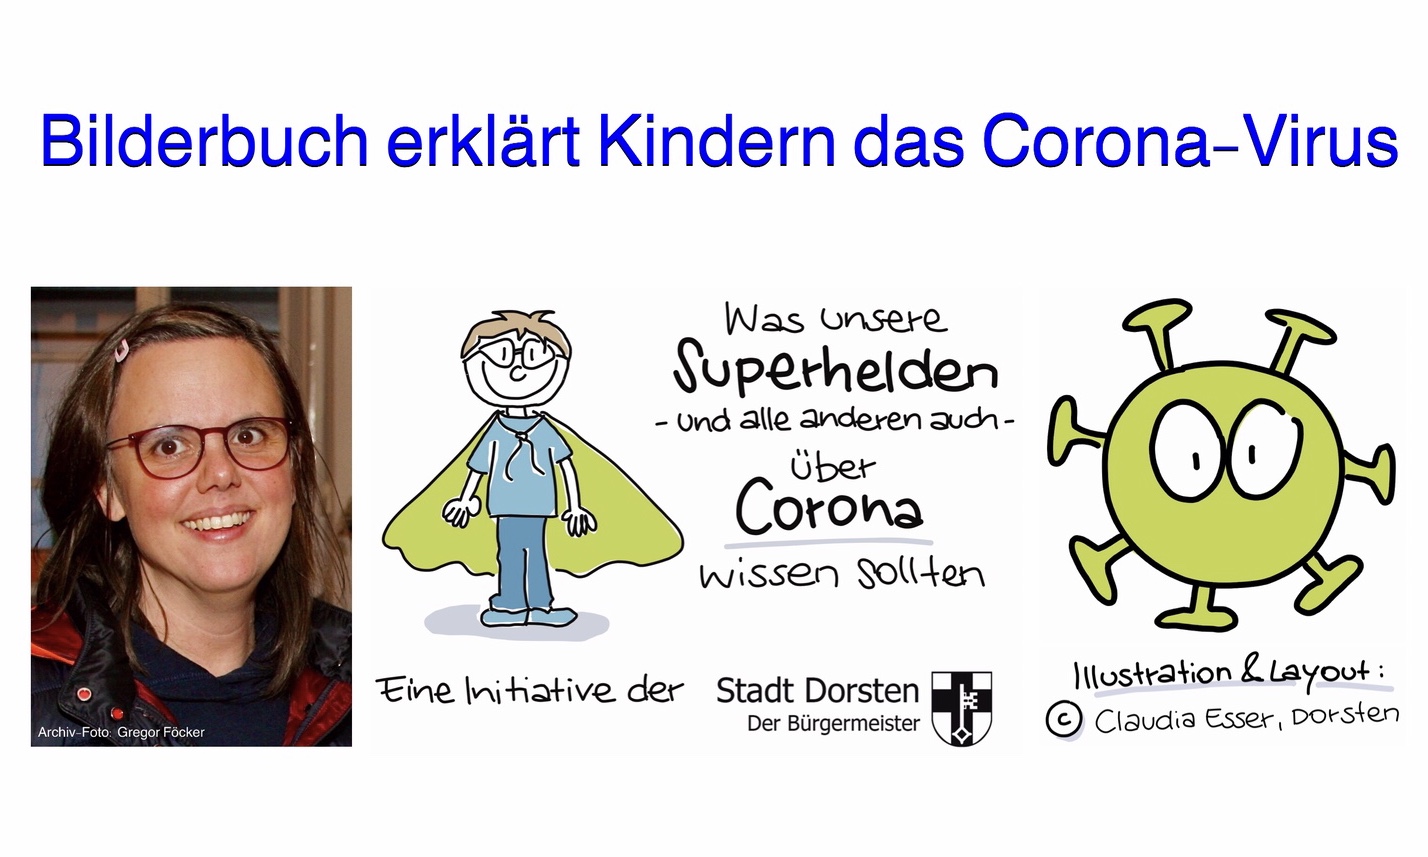 Kostenloses Bilderbuch für Kinder über das Corona-Virus gestaltet von der Dorstener Illustratorin Claudia Esser